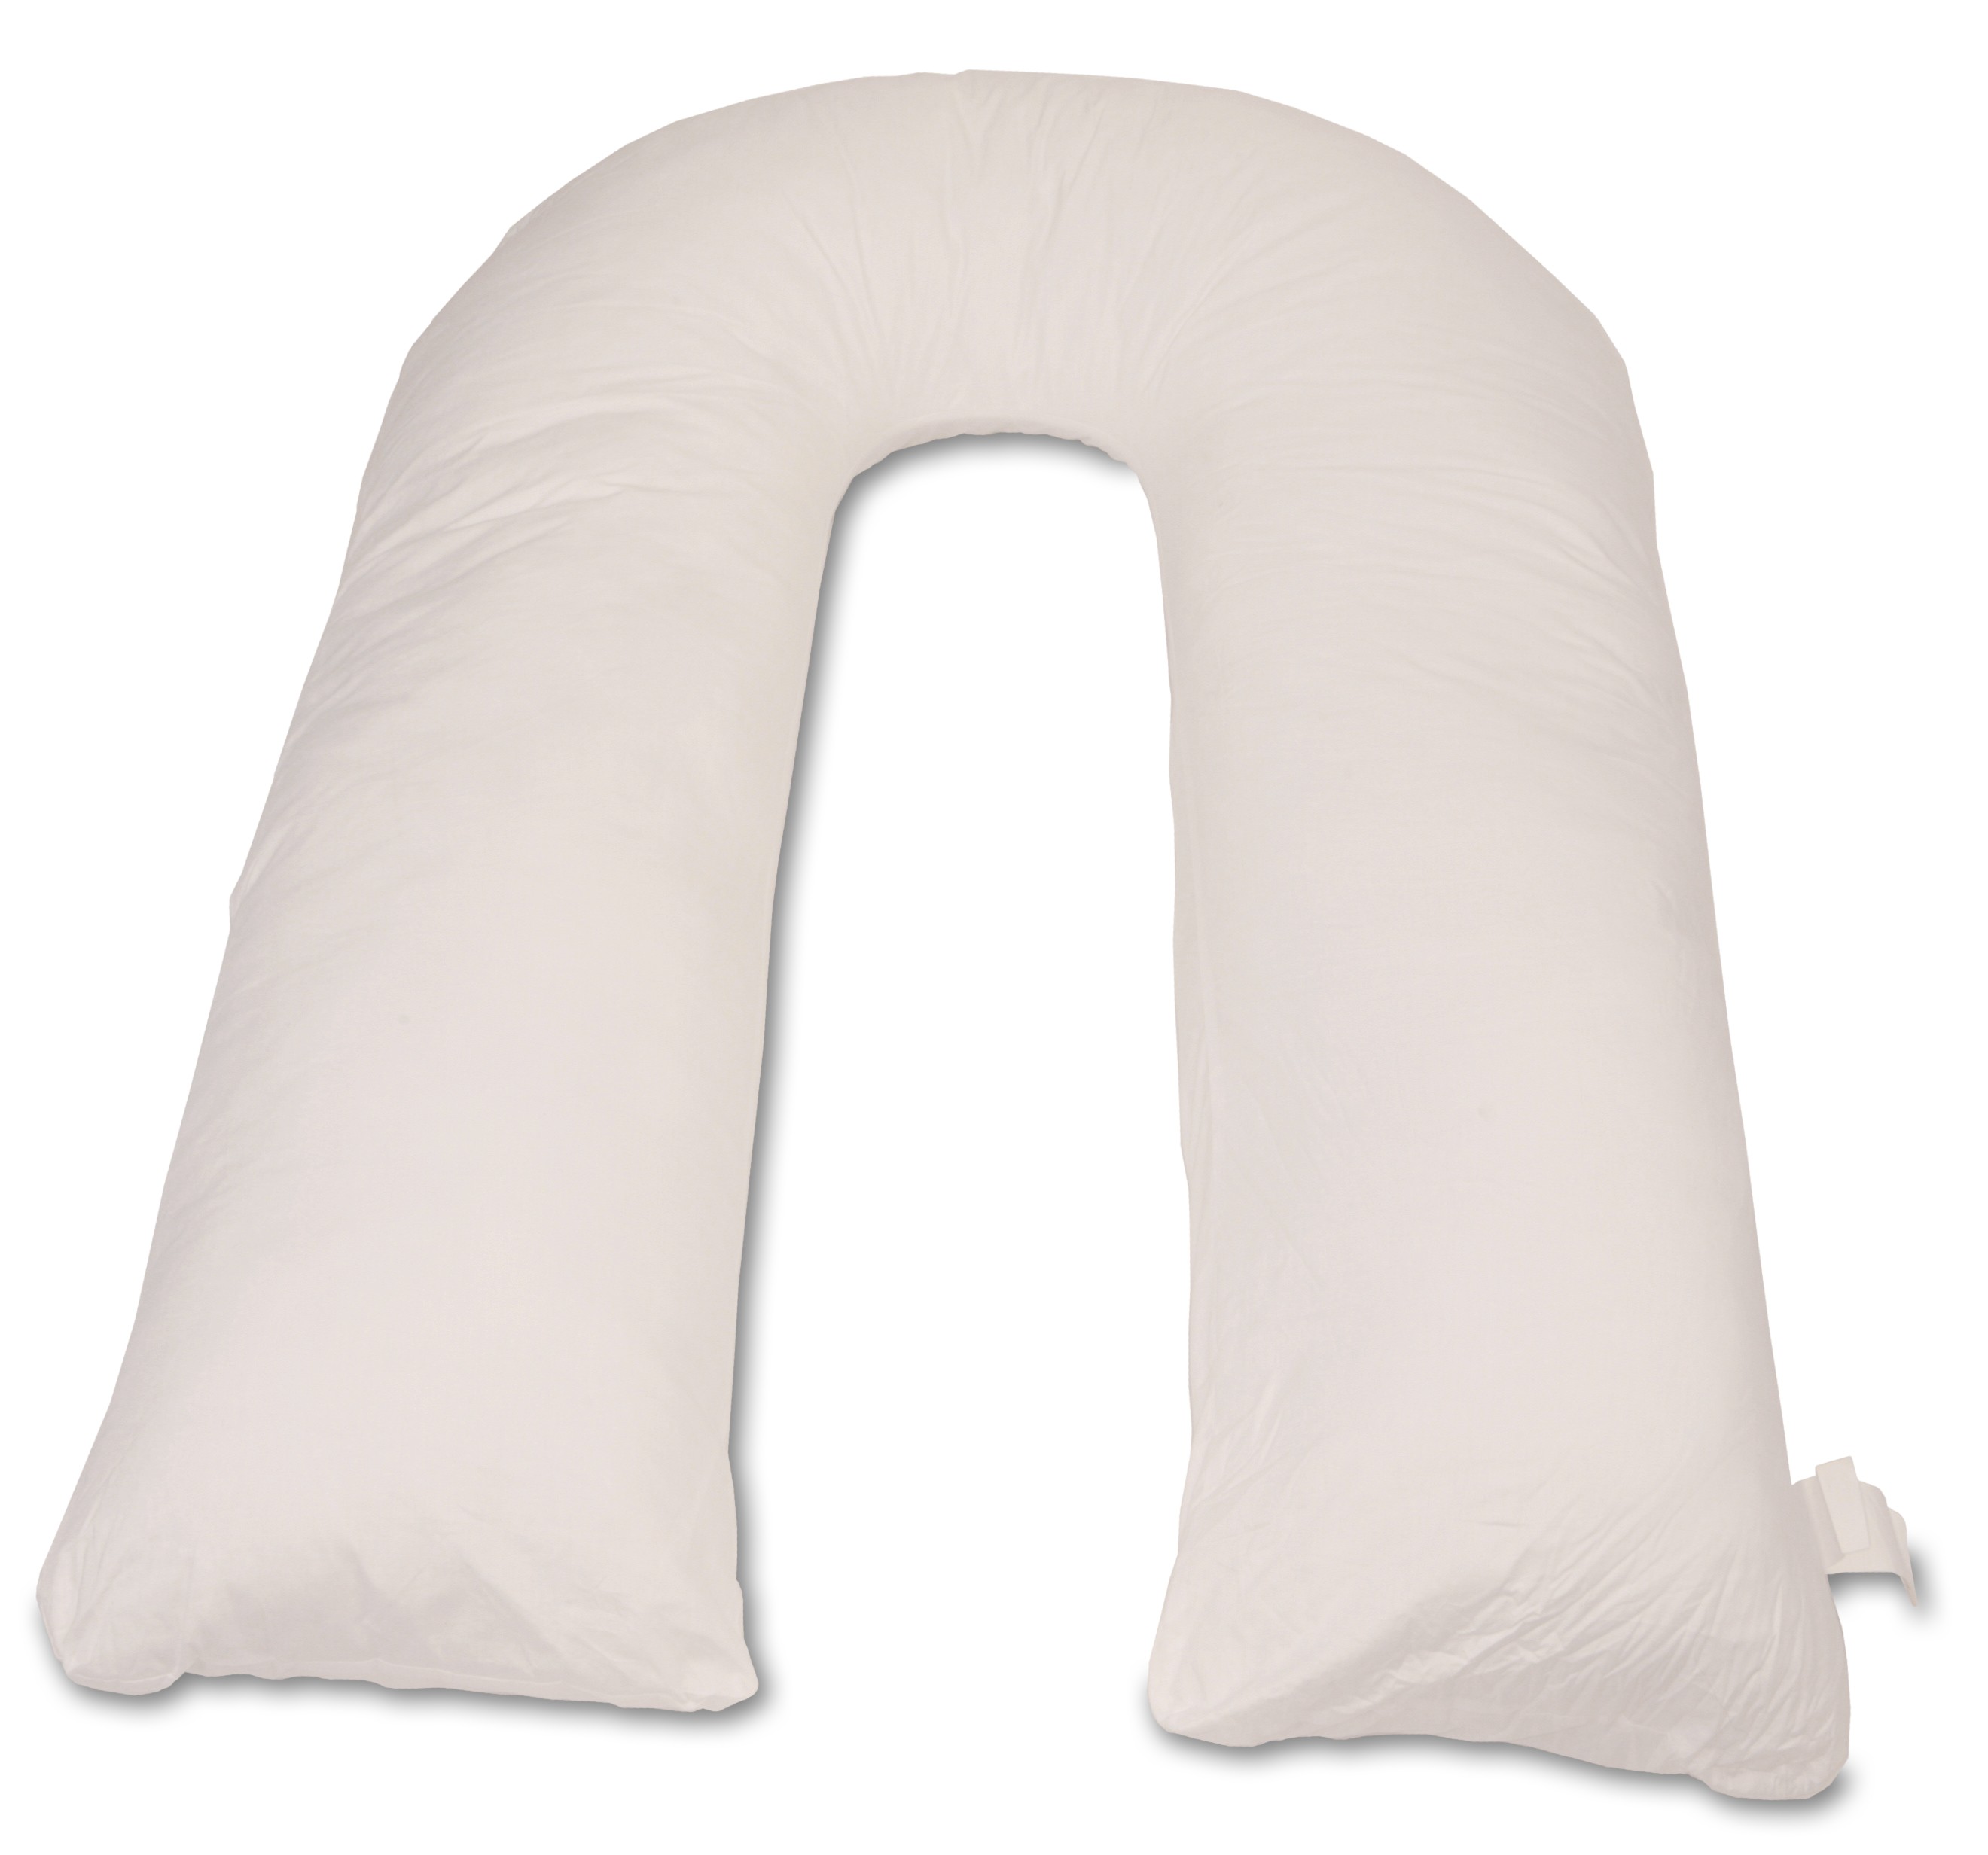 DeluxeComfort com Deluxe Comfort Perfect U Full Body Pillow Inspired